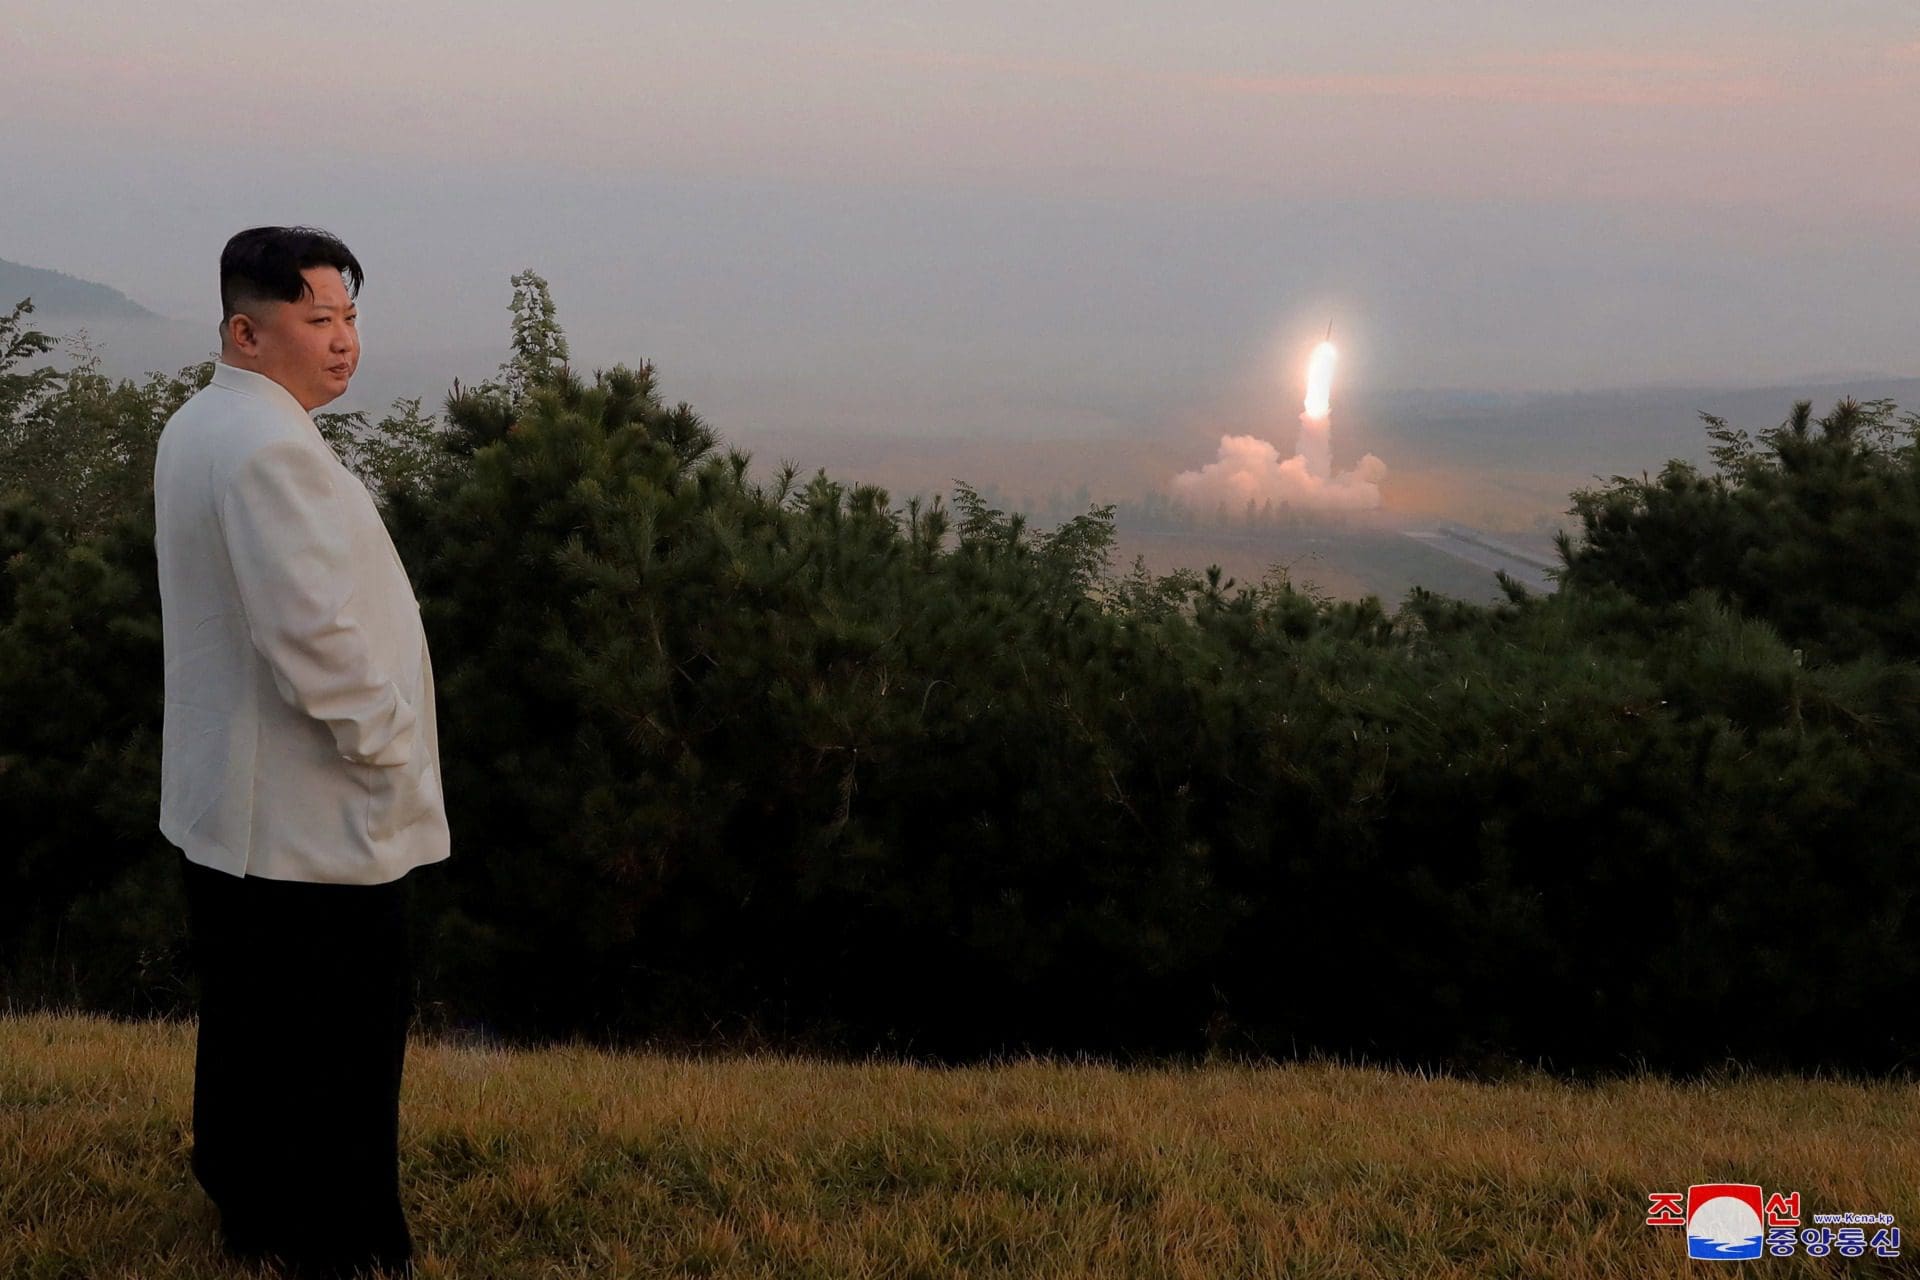 Coreia do Sul anuncia primeiras sanções em cinco anos contra Coreia do Norte